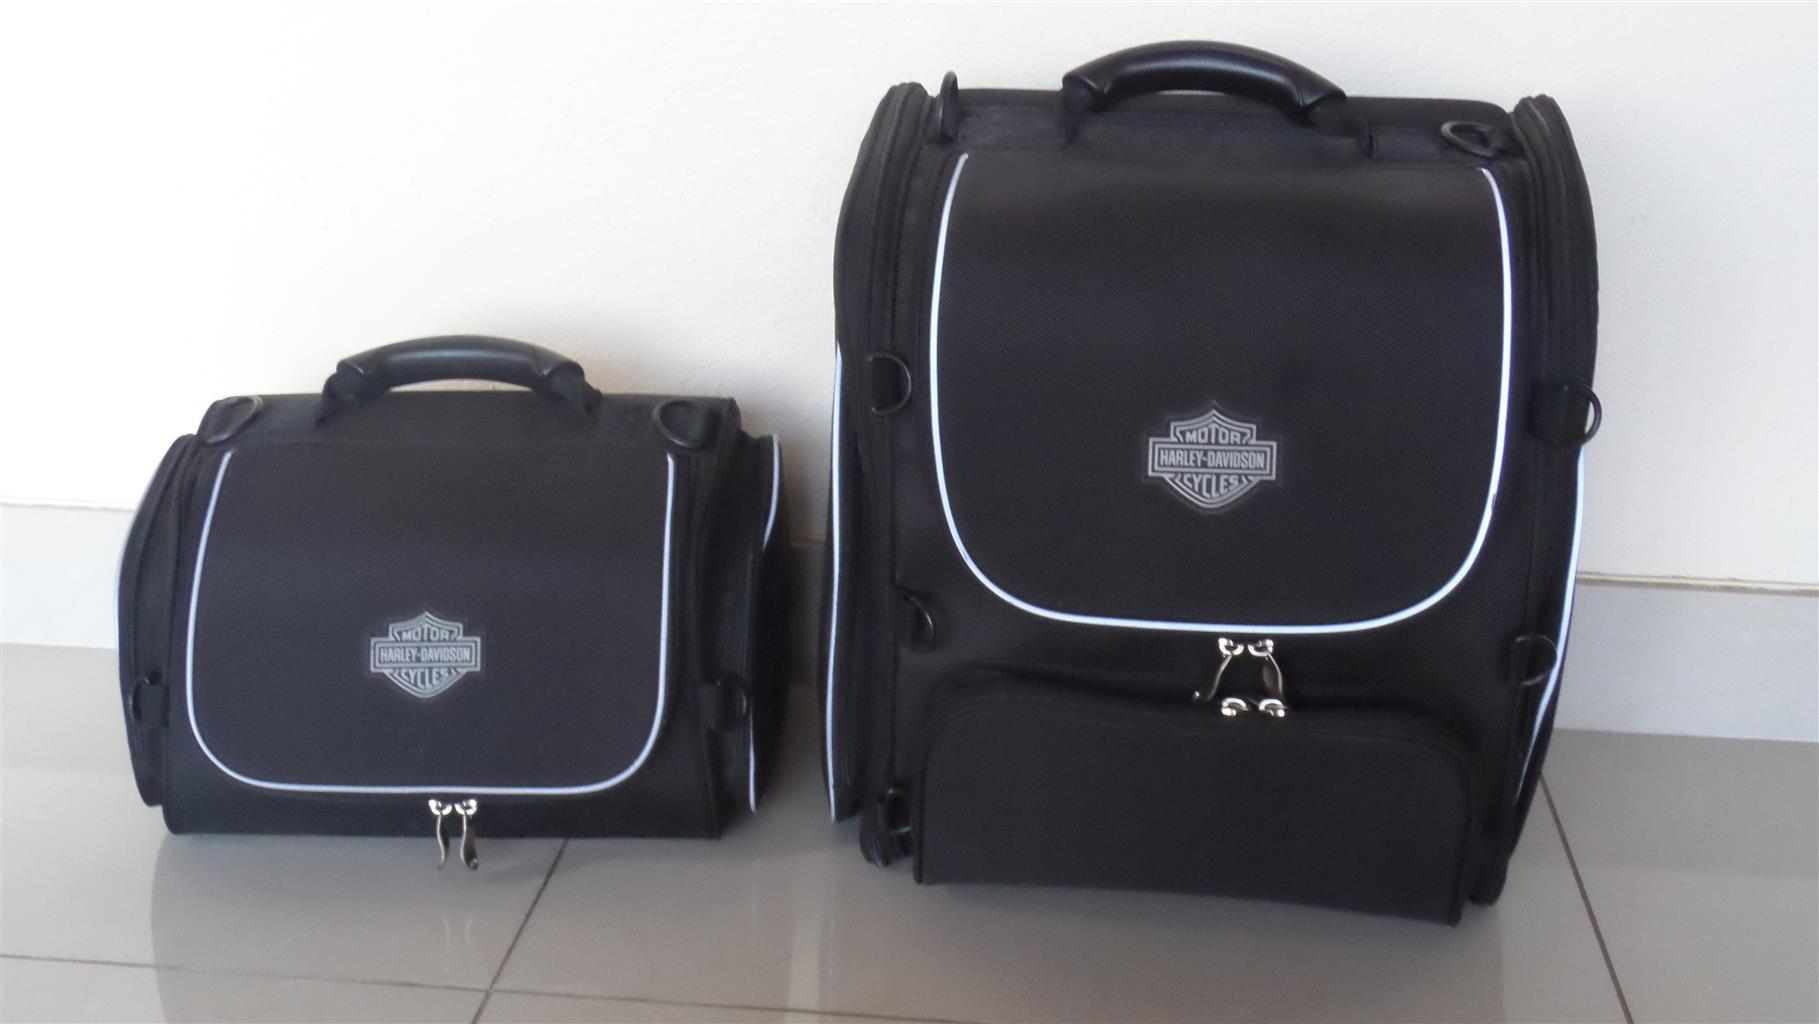  Harley  Davidson  Premium Touring Luggage Set Junk Mail